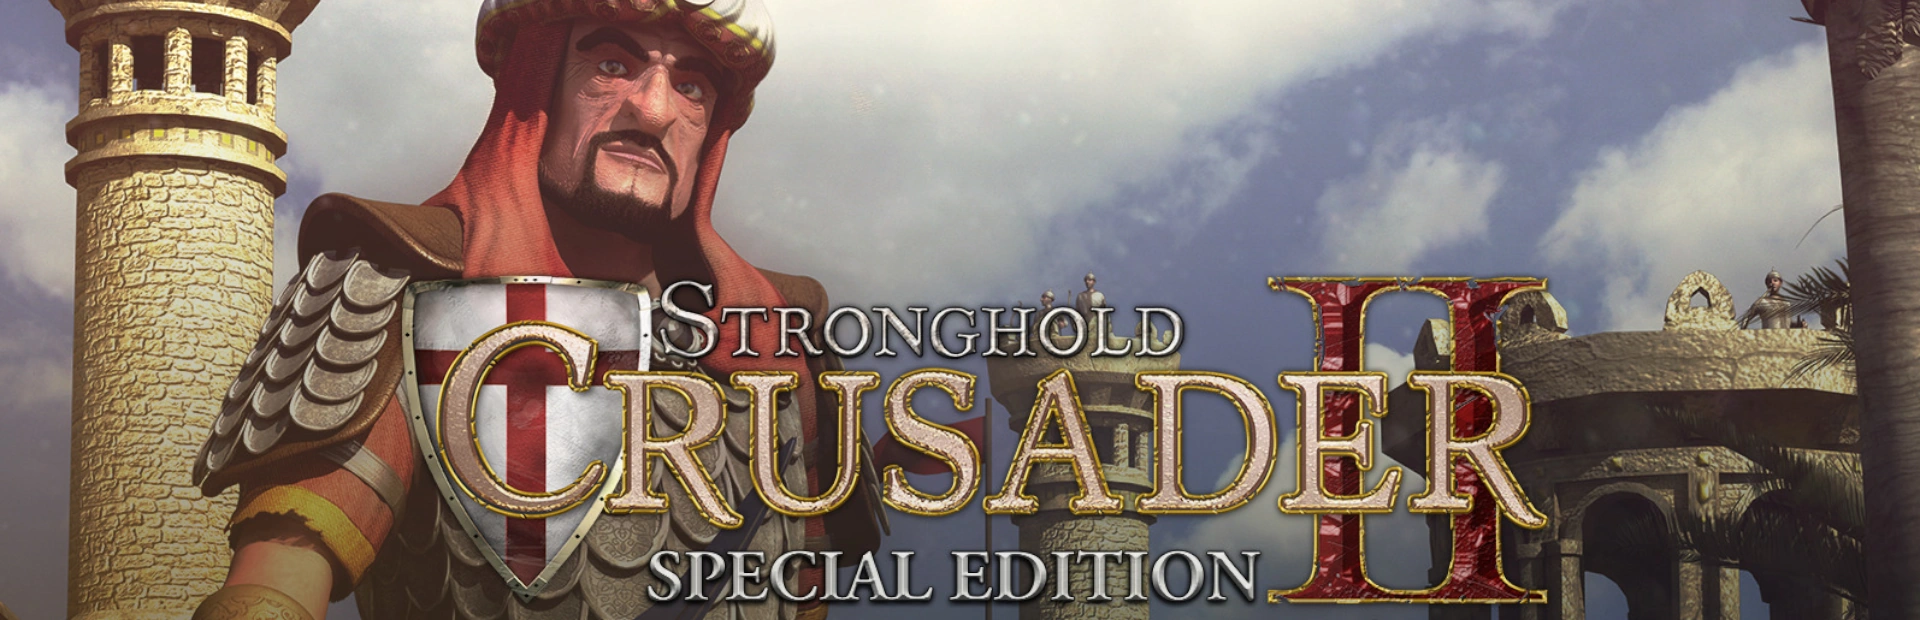 دانلود بازی Stronghold Crusader 2 برای کامپیوتر | گیمباتو